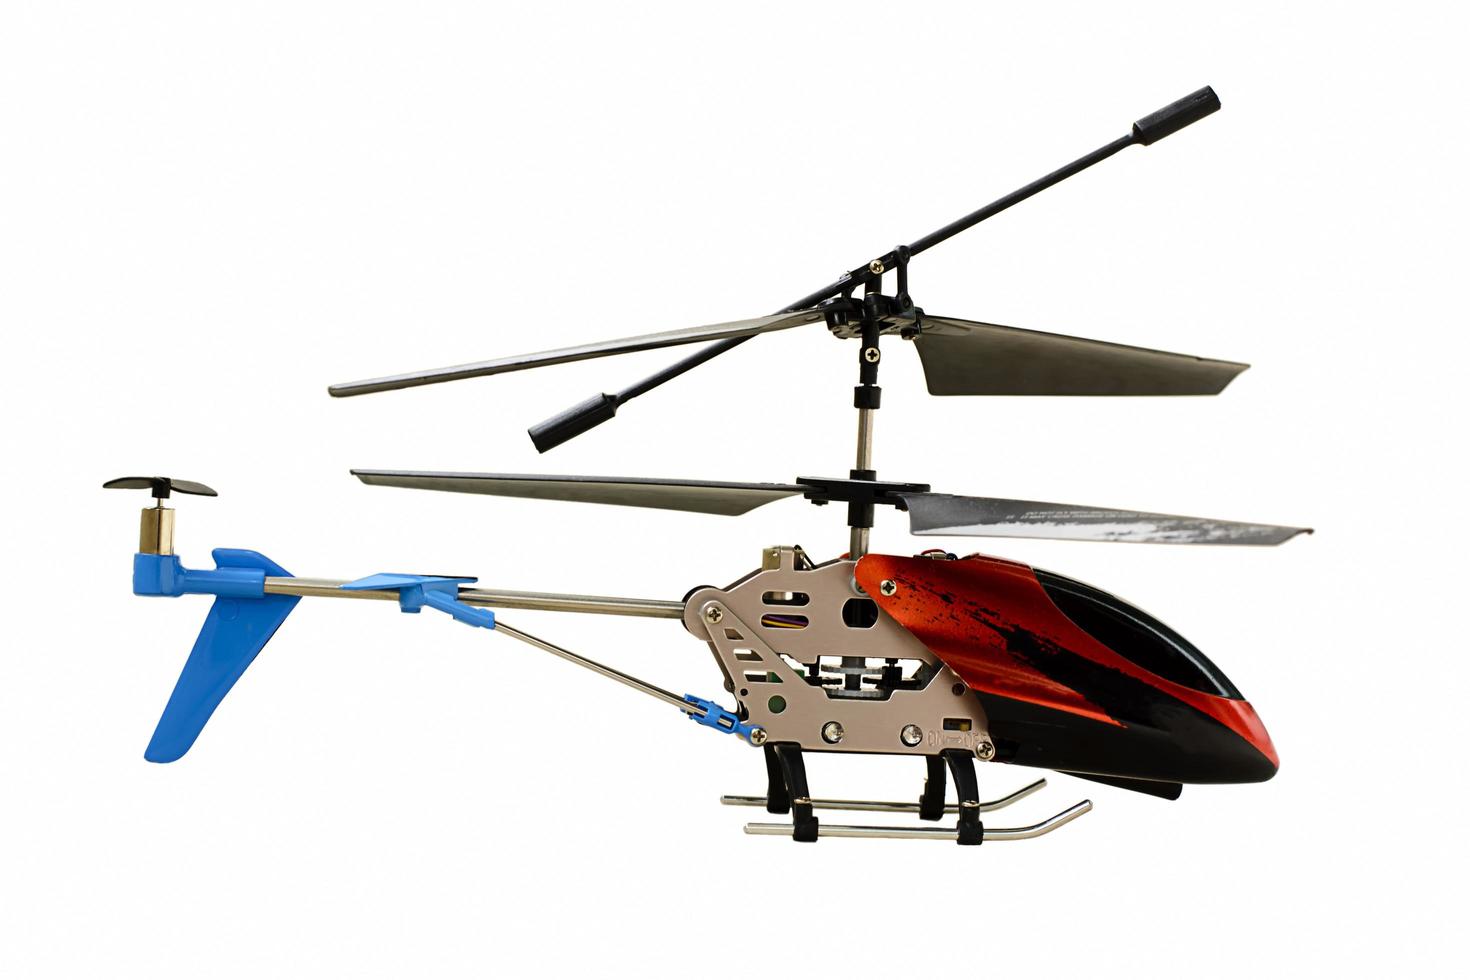 de speelgoedhelikopter op een witte achtergrond. foto